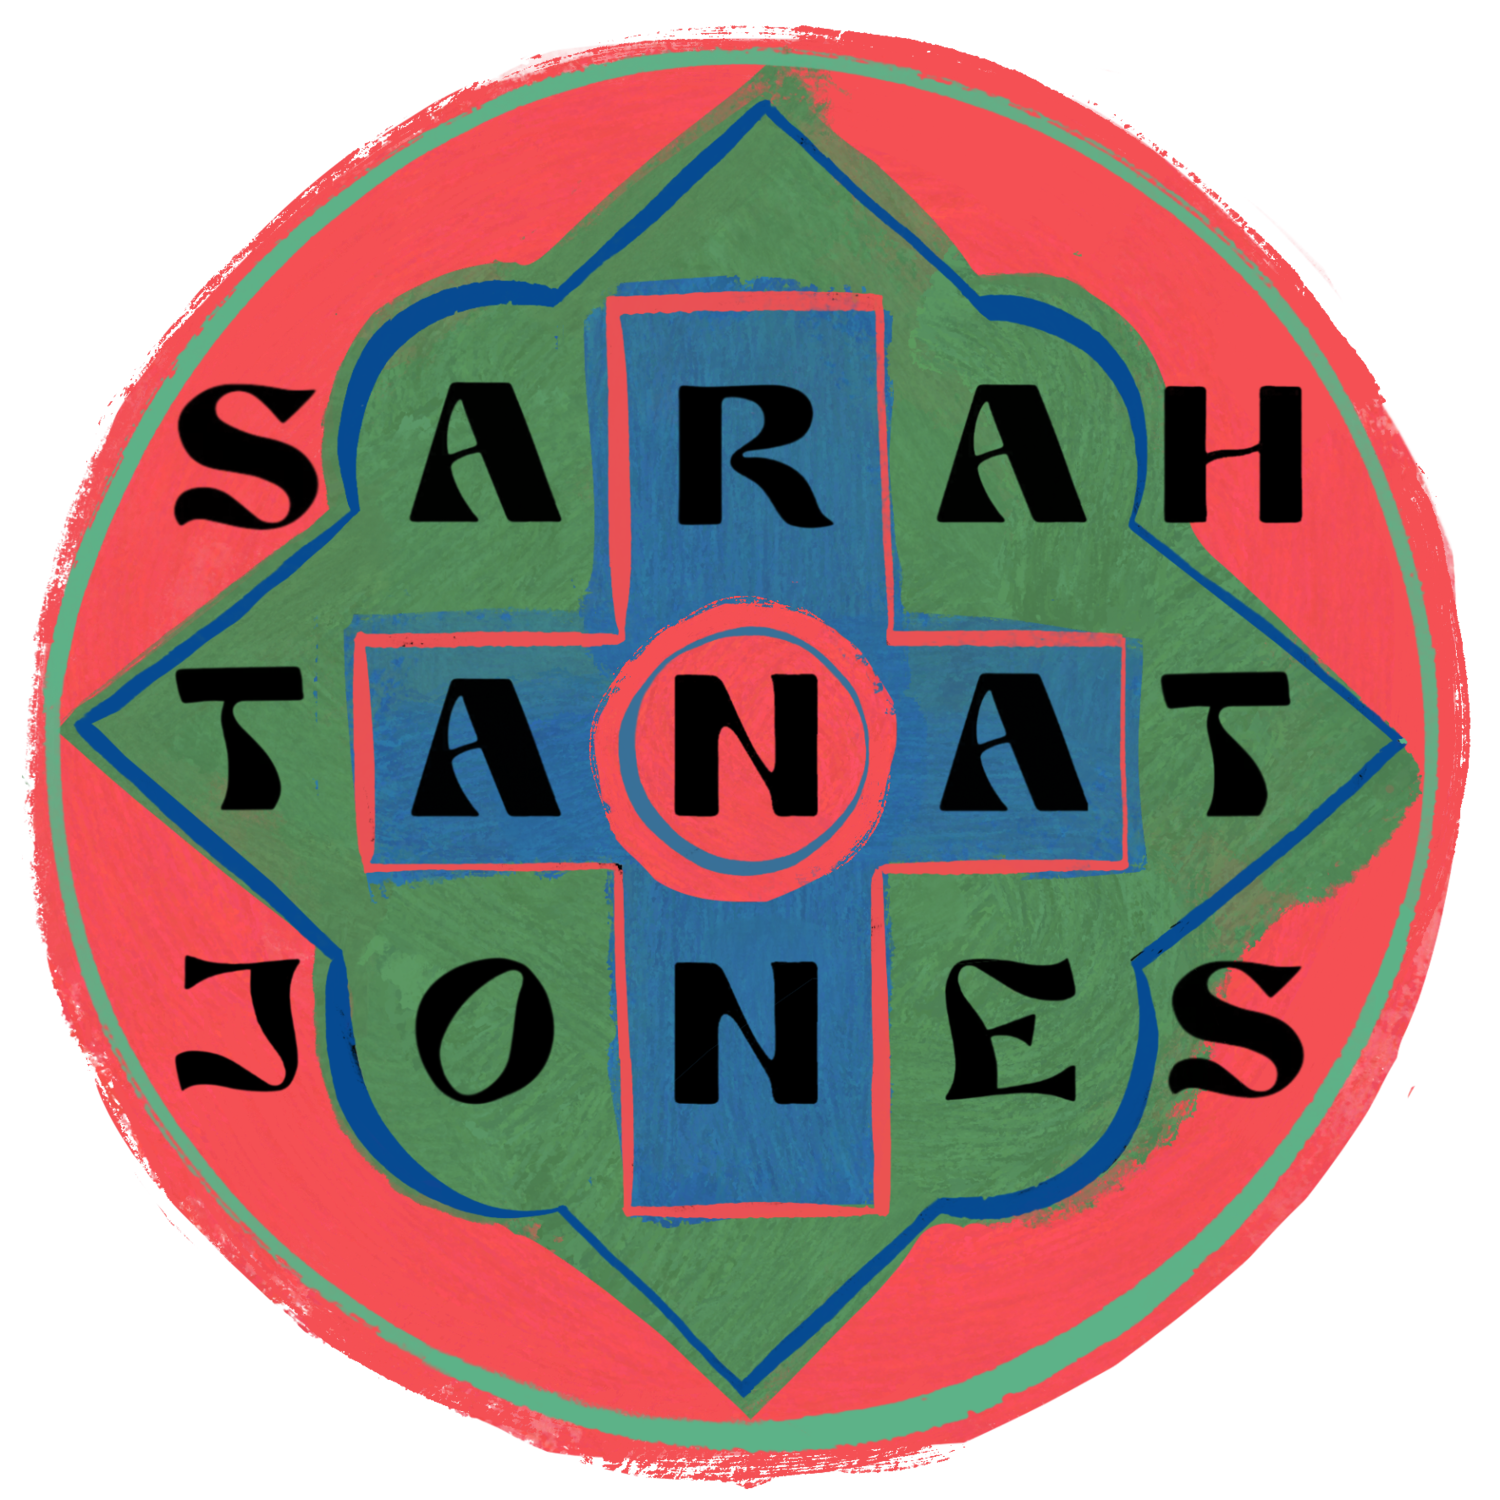 Sarah Tanat-Jones